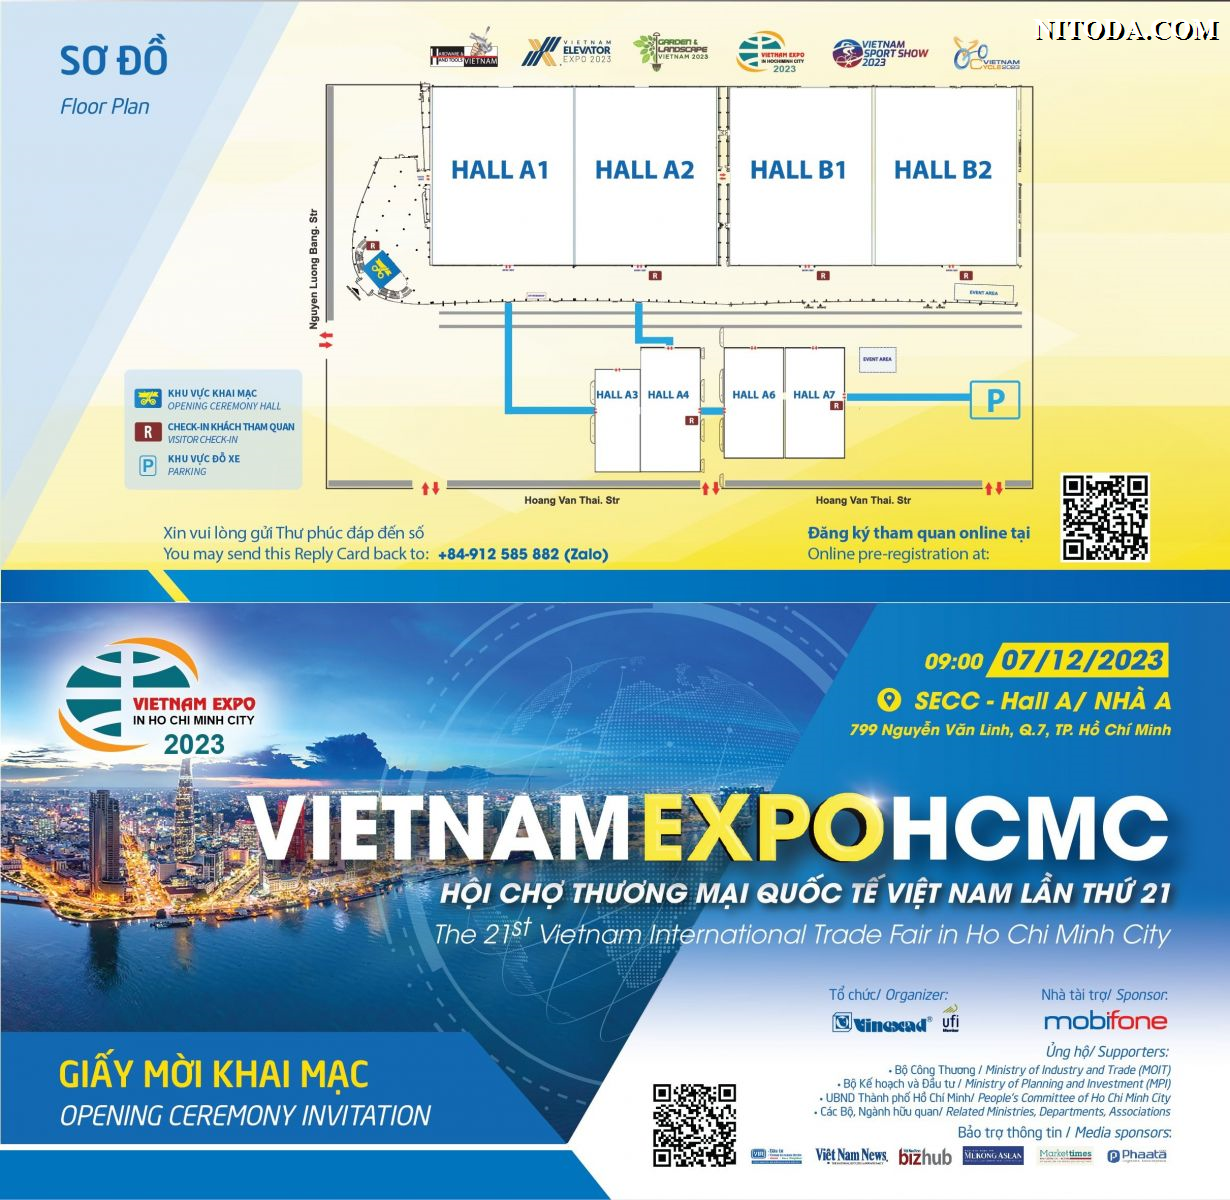 Giấy mời Hội chợ triễn lãm Ho Chi Minh Expo 2023